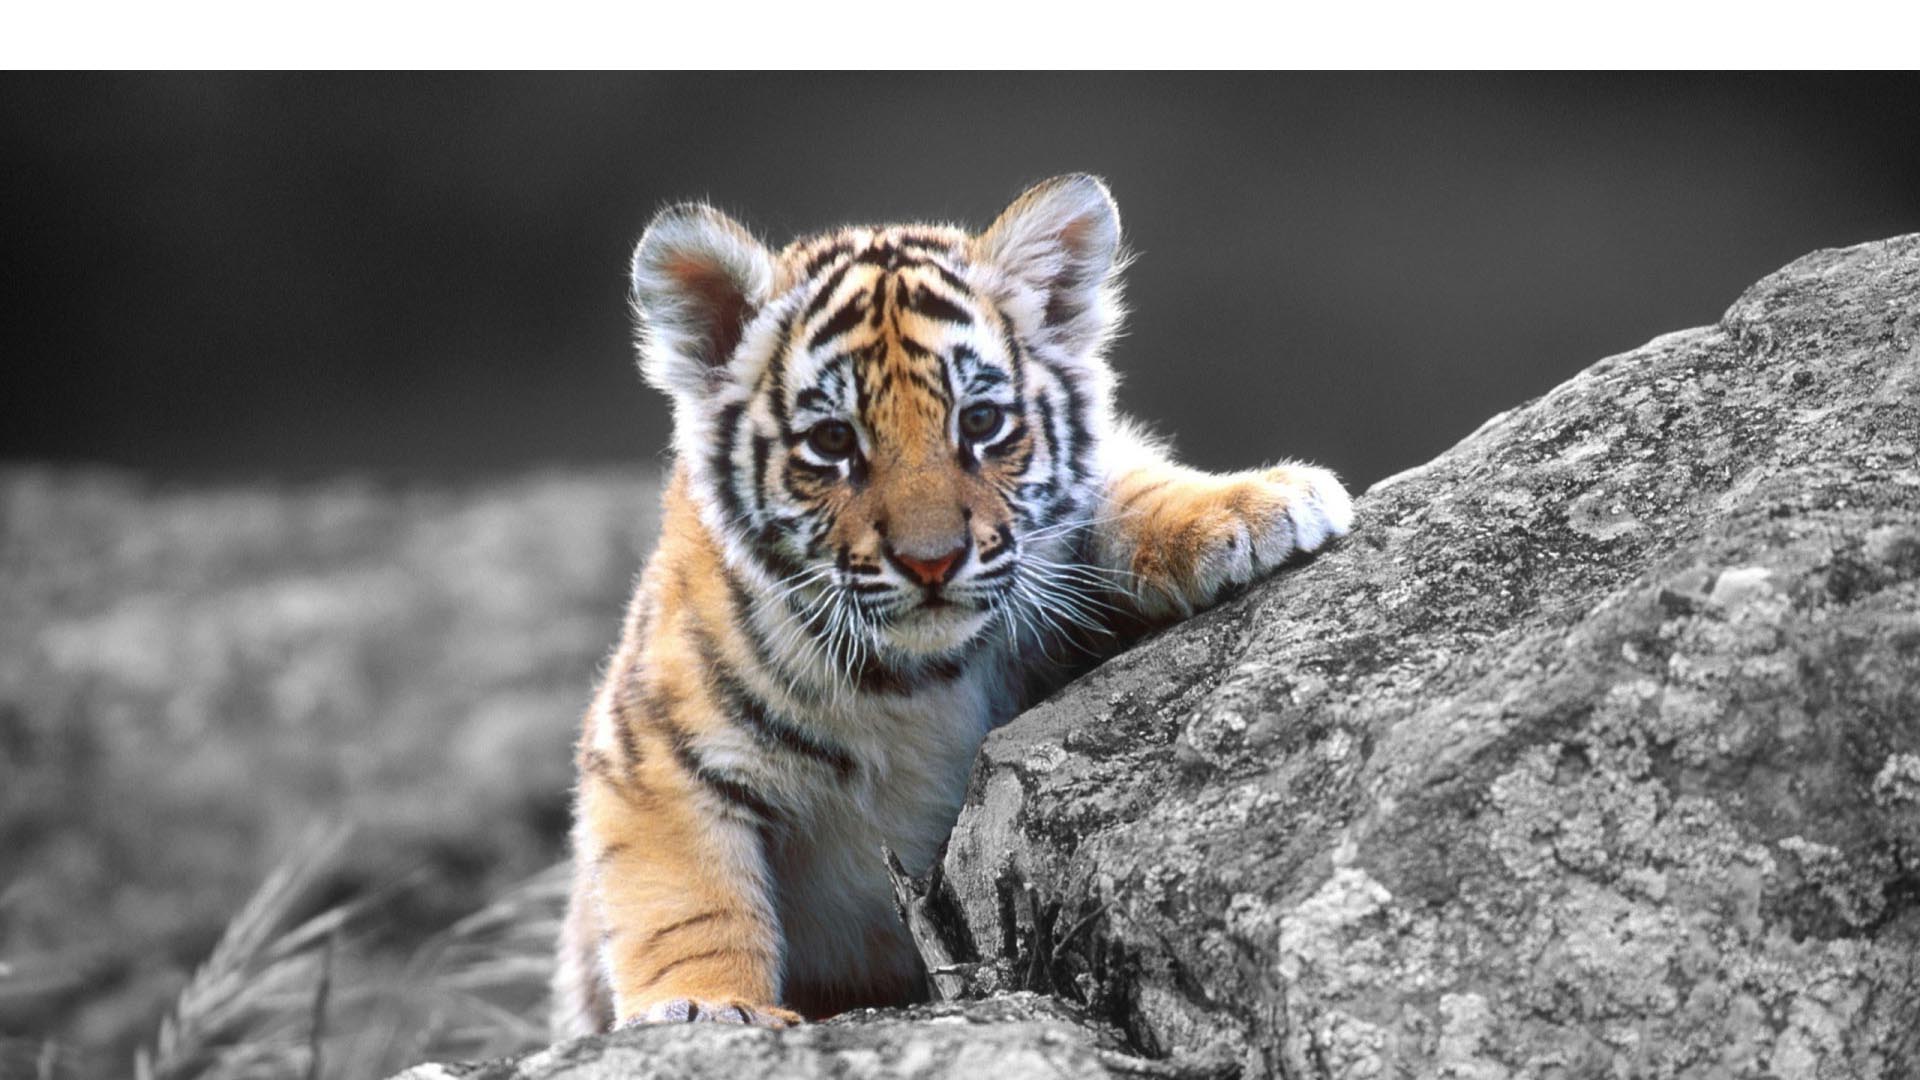 Este tigre estuvo al borde la extinción en los años 40 llegando a quedar 40 ejemplares. En la actualidad hay 400